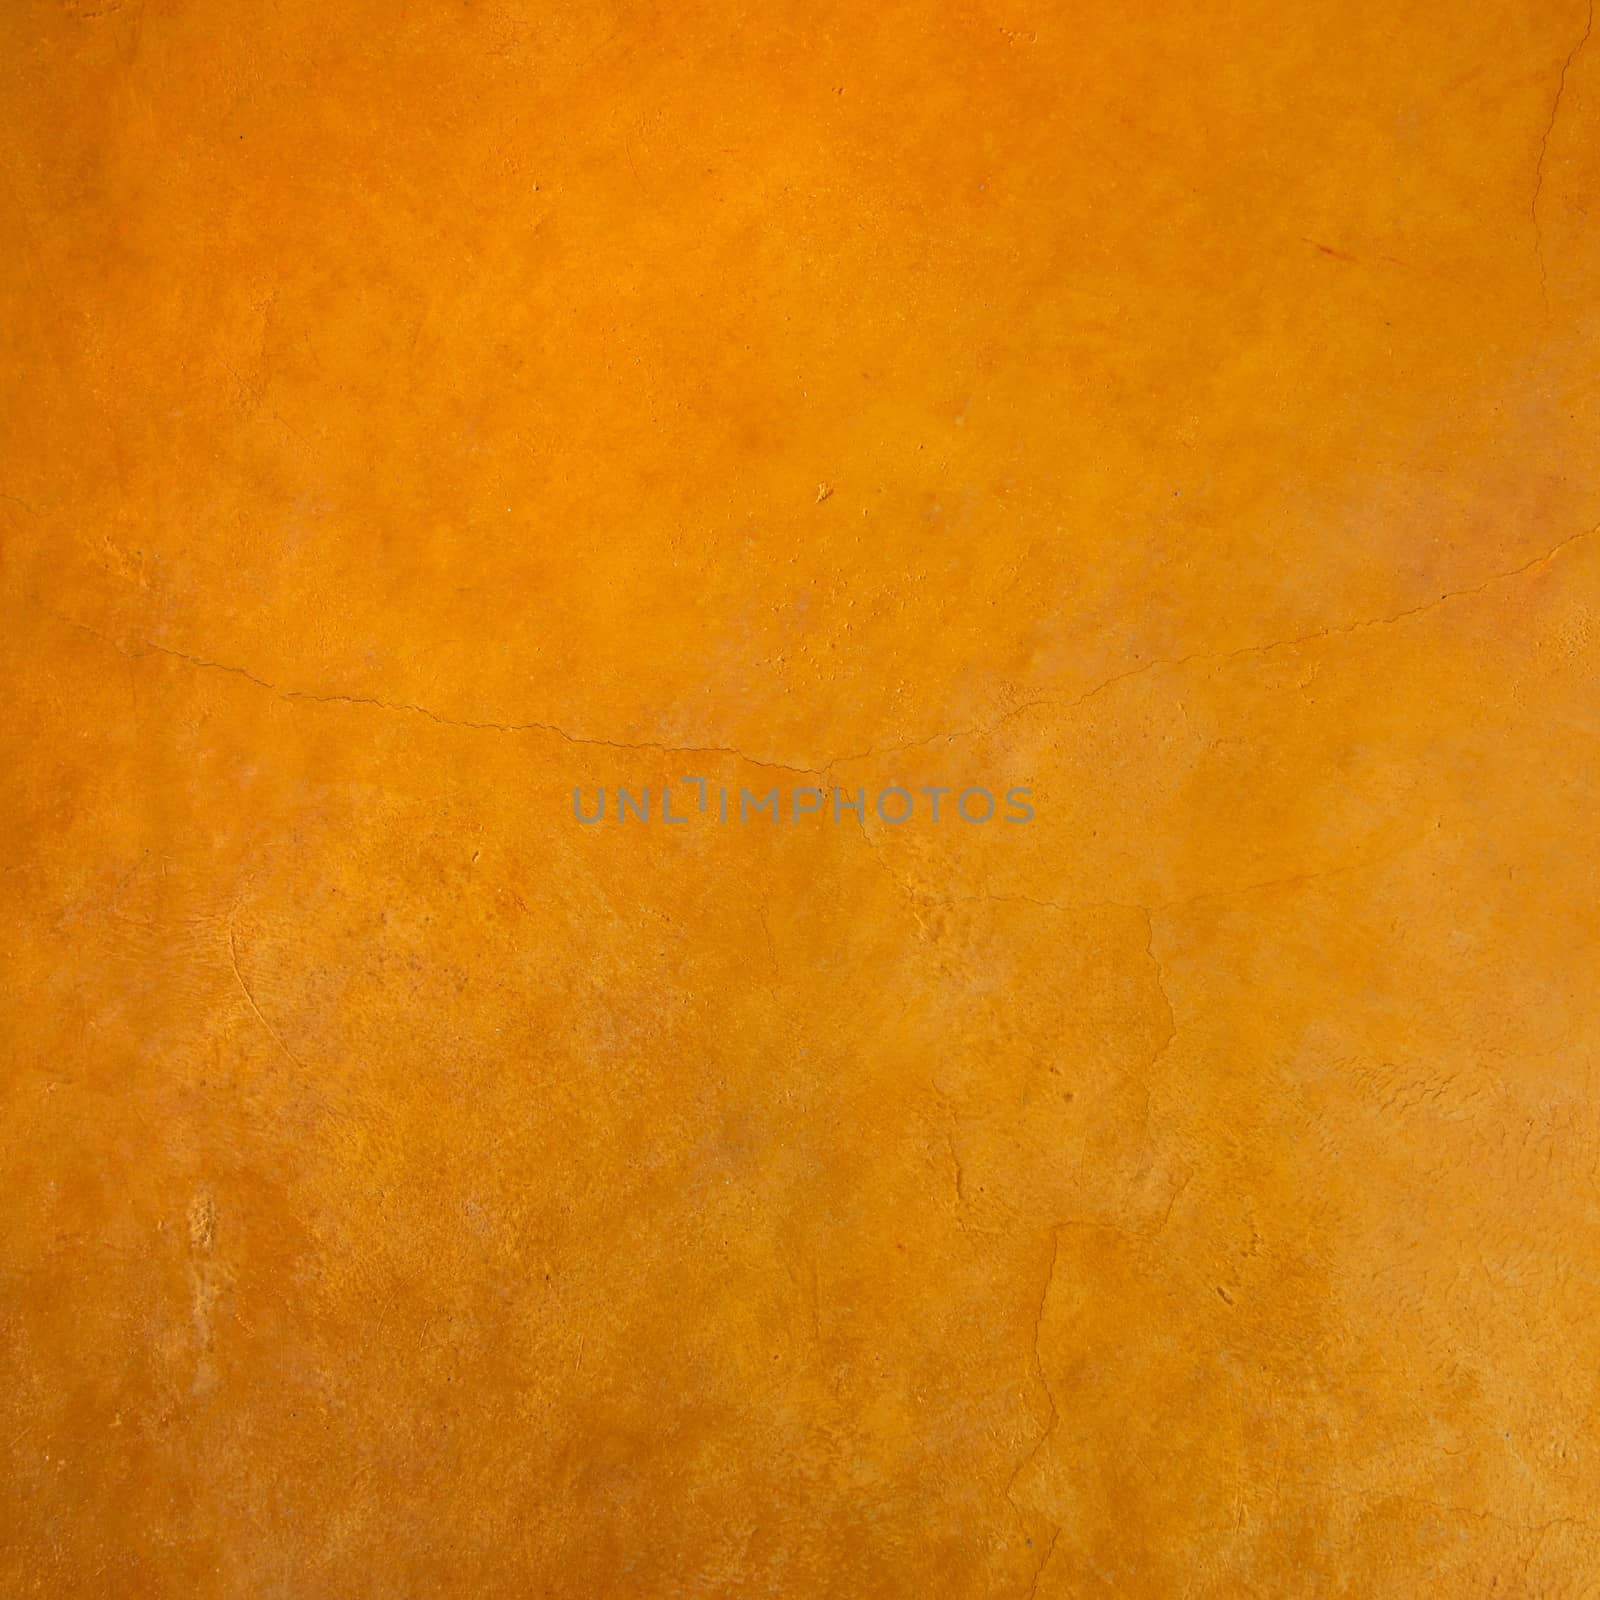 Orange Wall by antpkr